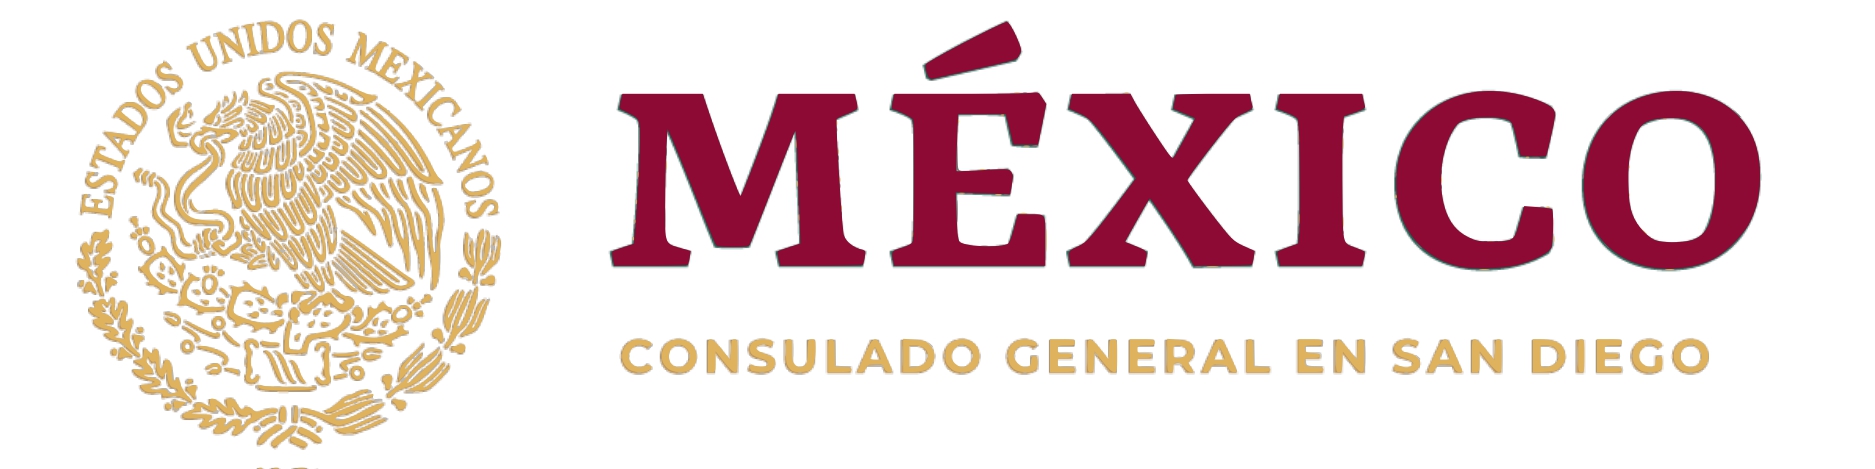 Consulate of Mexico logo